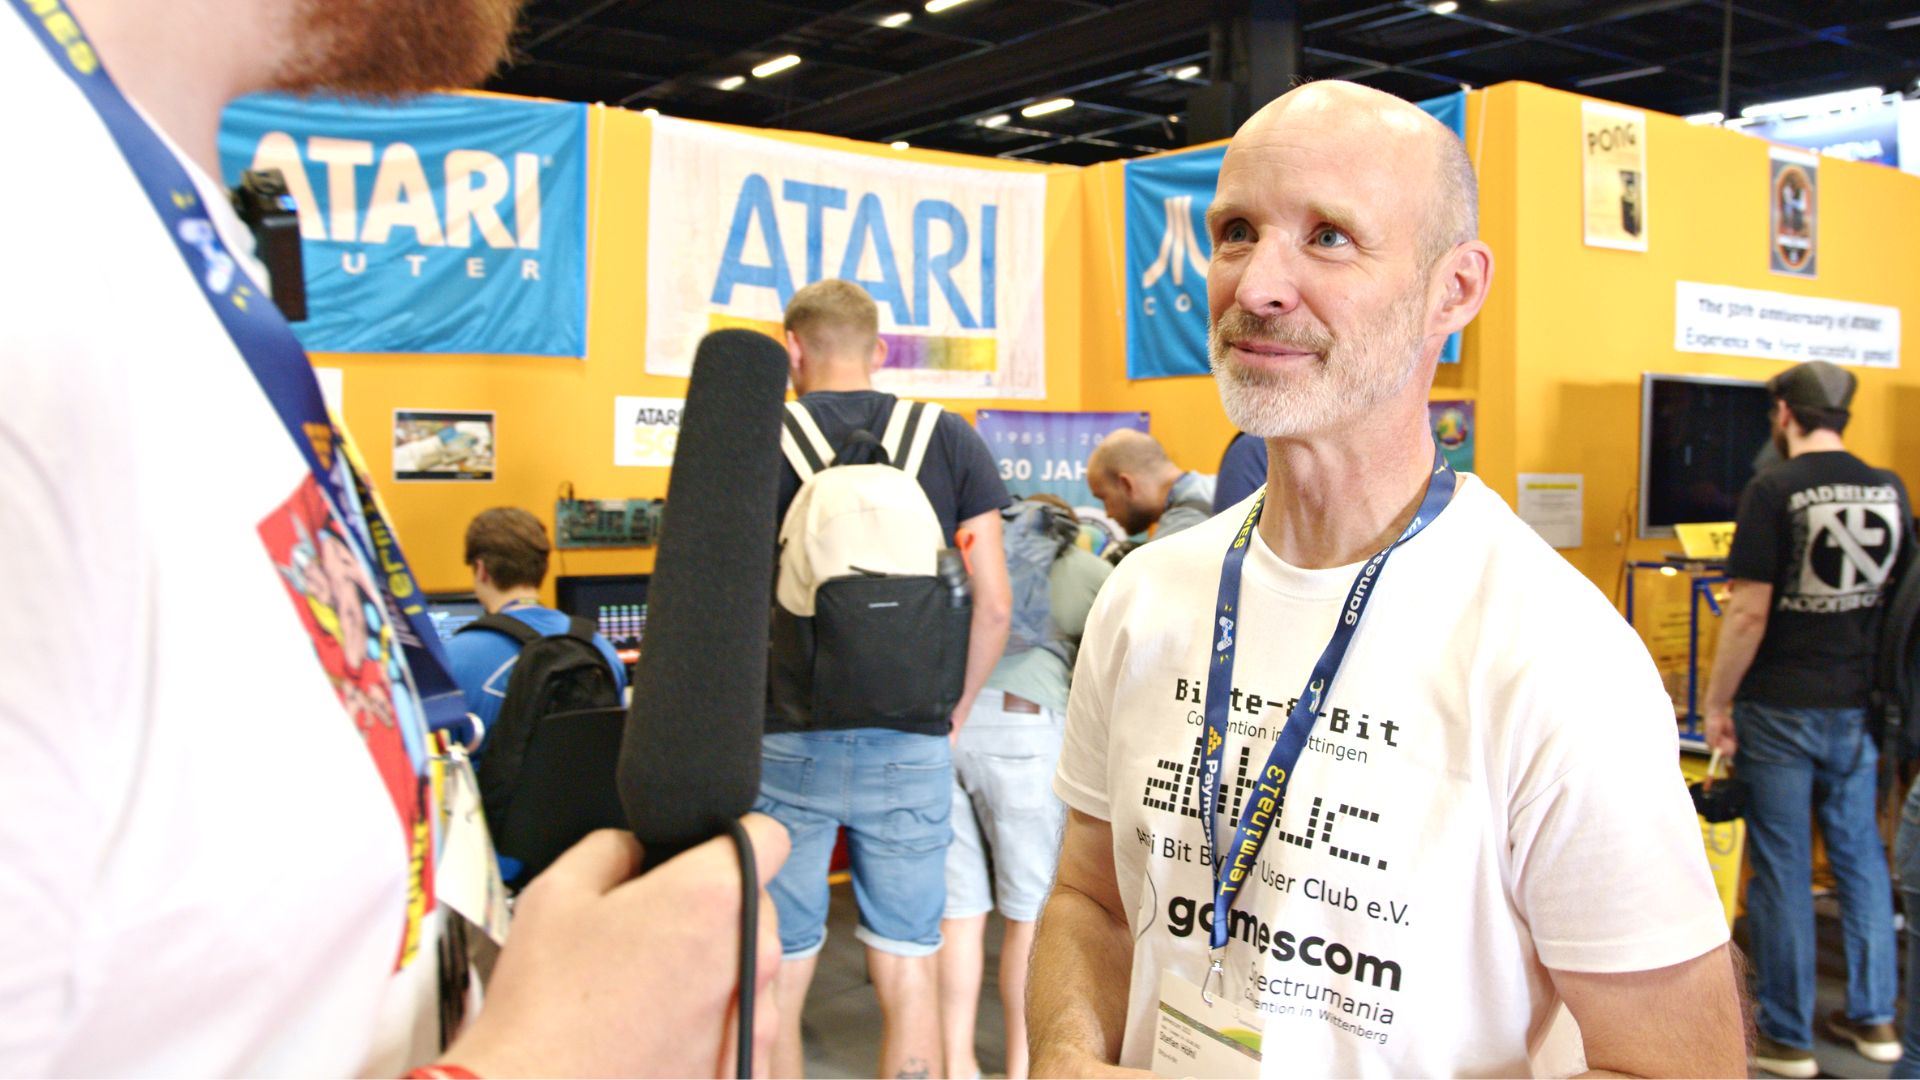 ABBUC e.V.: Atari ist seine Leidenschaft